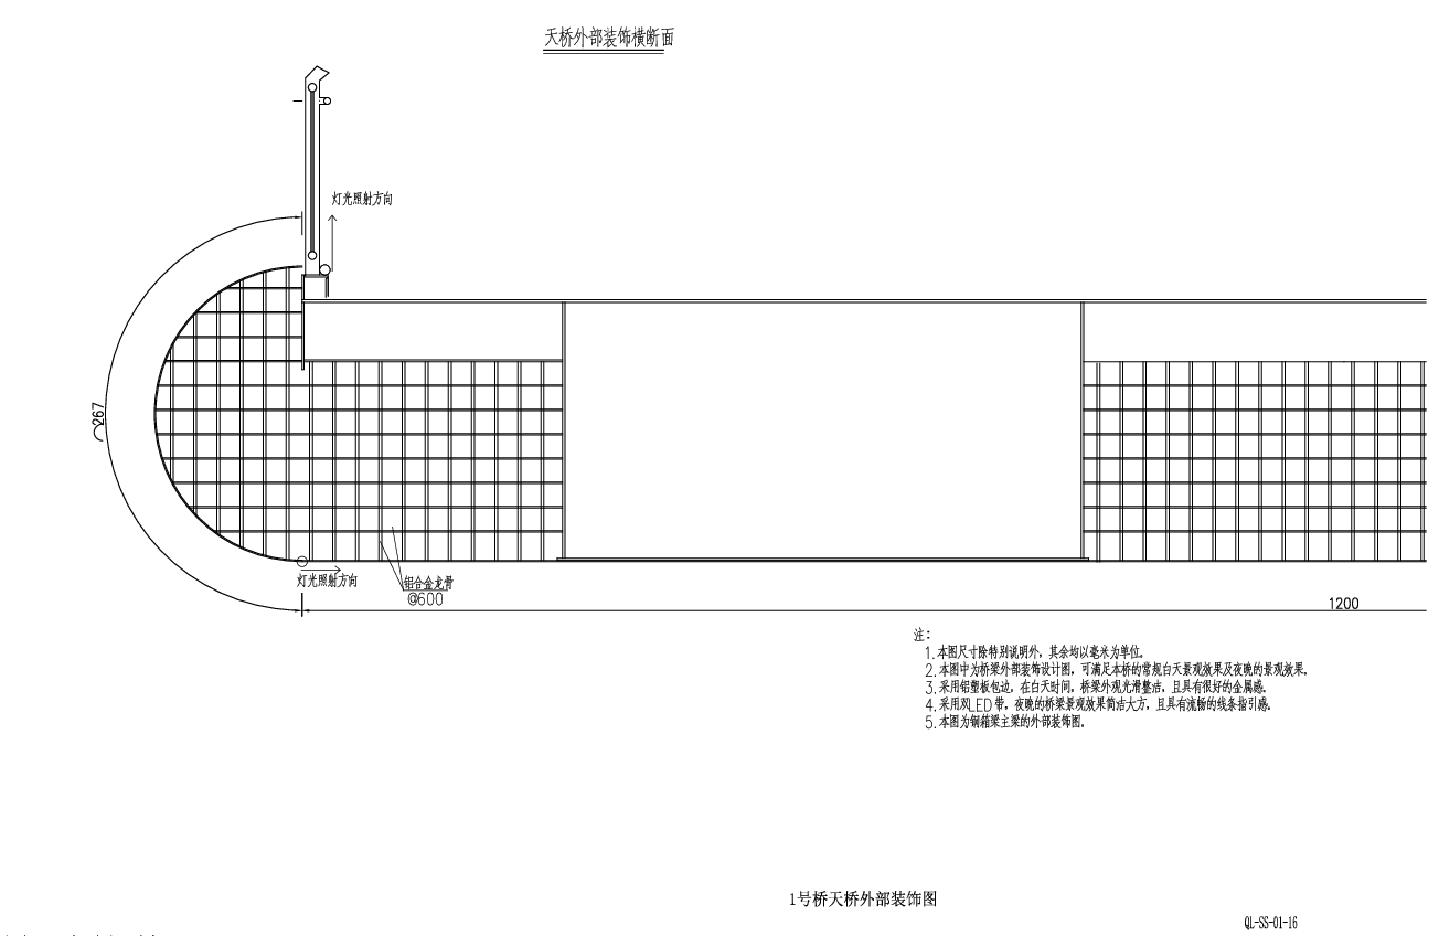 QL-SS-01-16天桥外部装饰CAD图.dwg